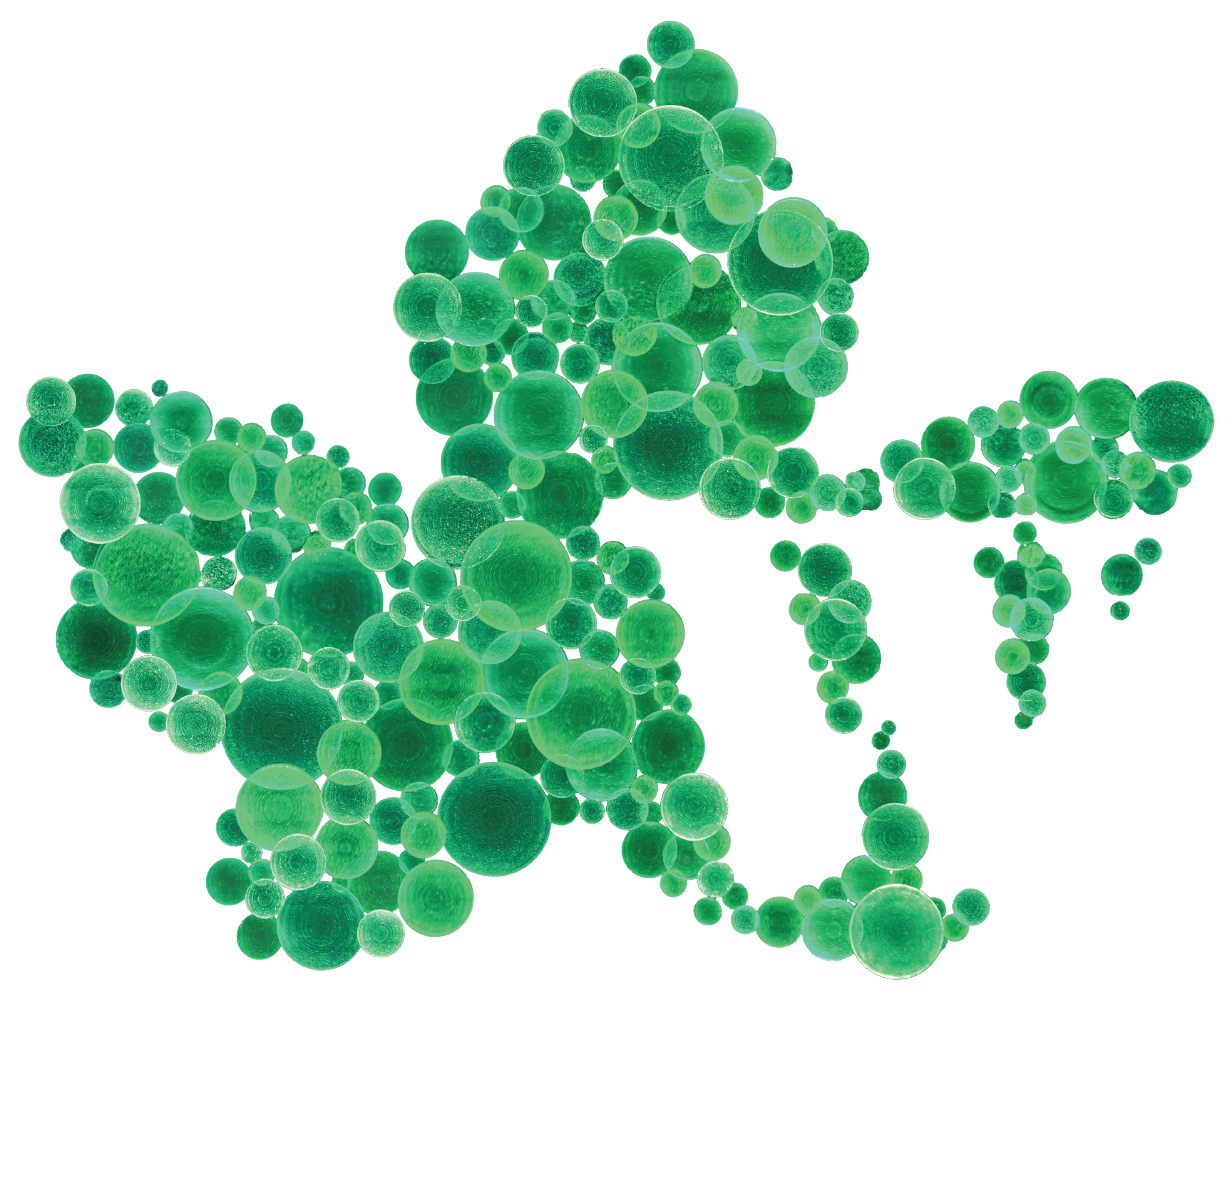 Wege Prize